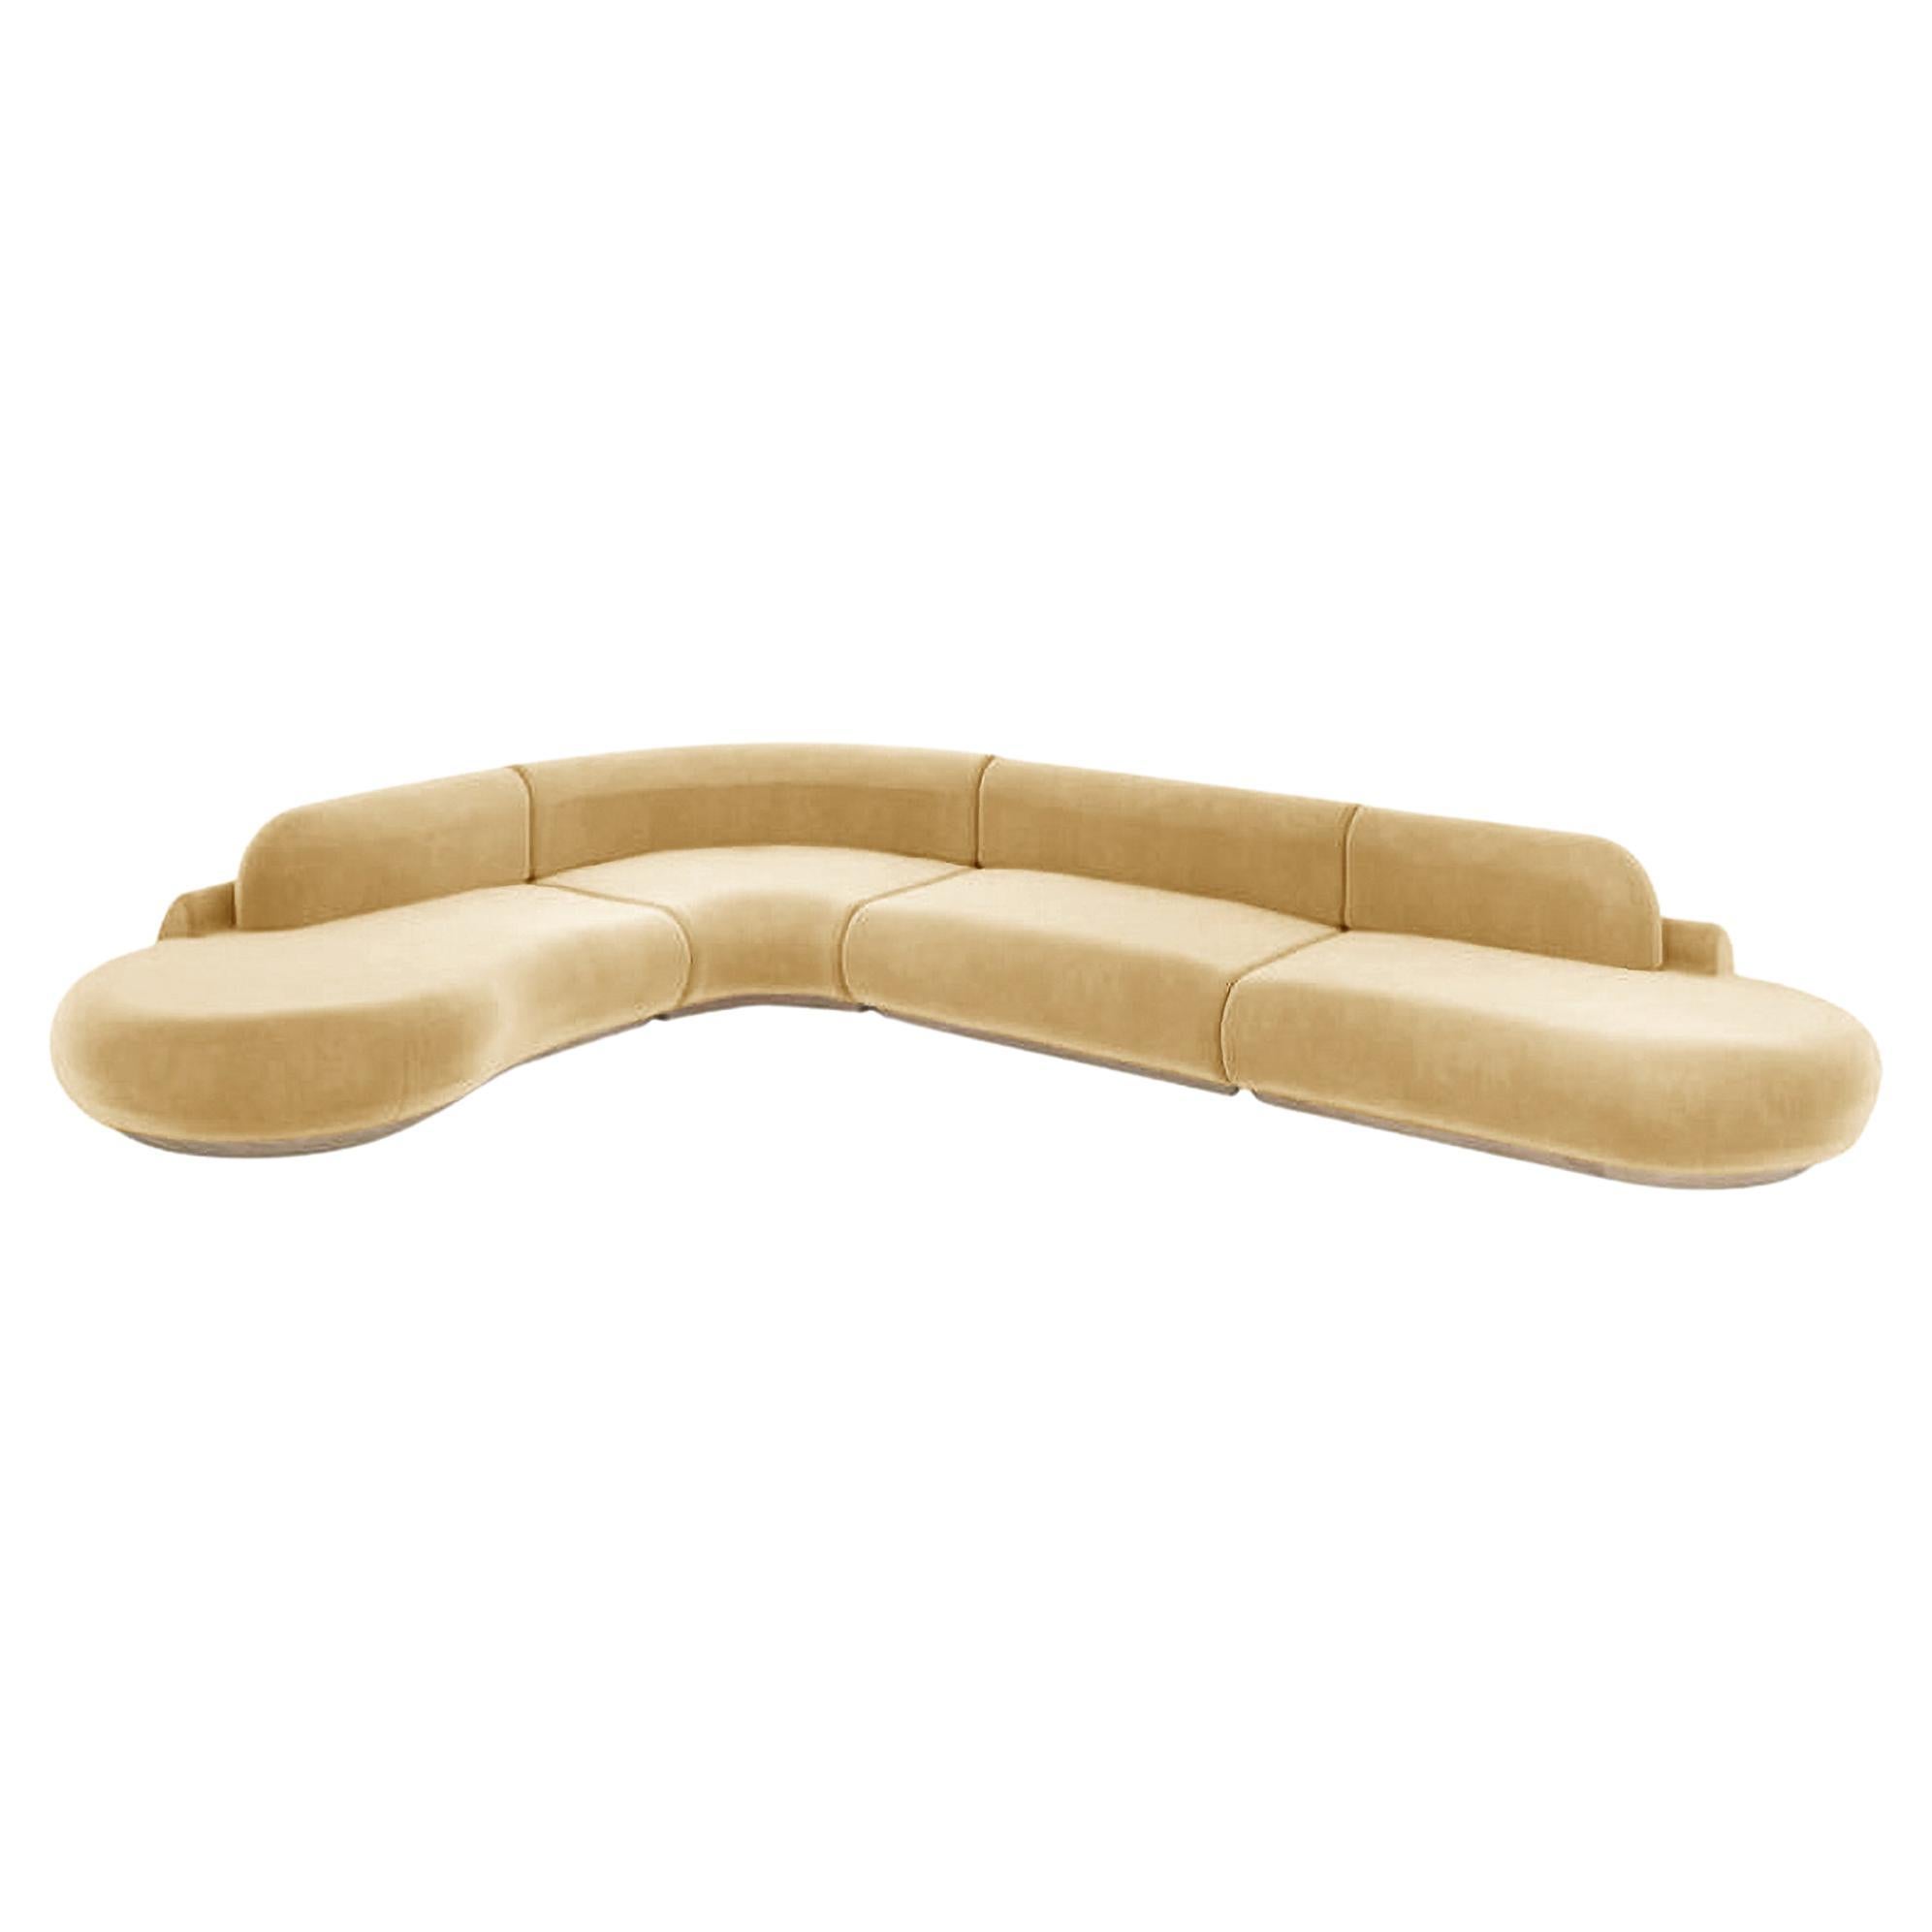 Naked Curved Sectional Sofa, 4 Stück mit Eiche Natur und Vigo Pflanzgefäß